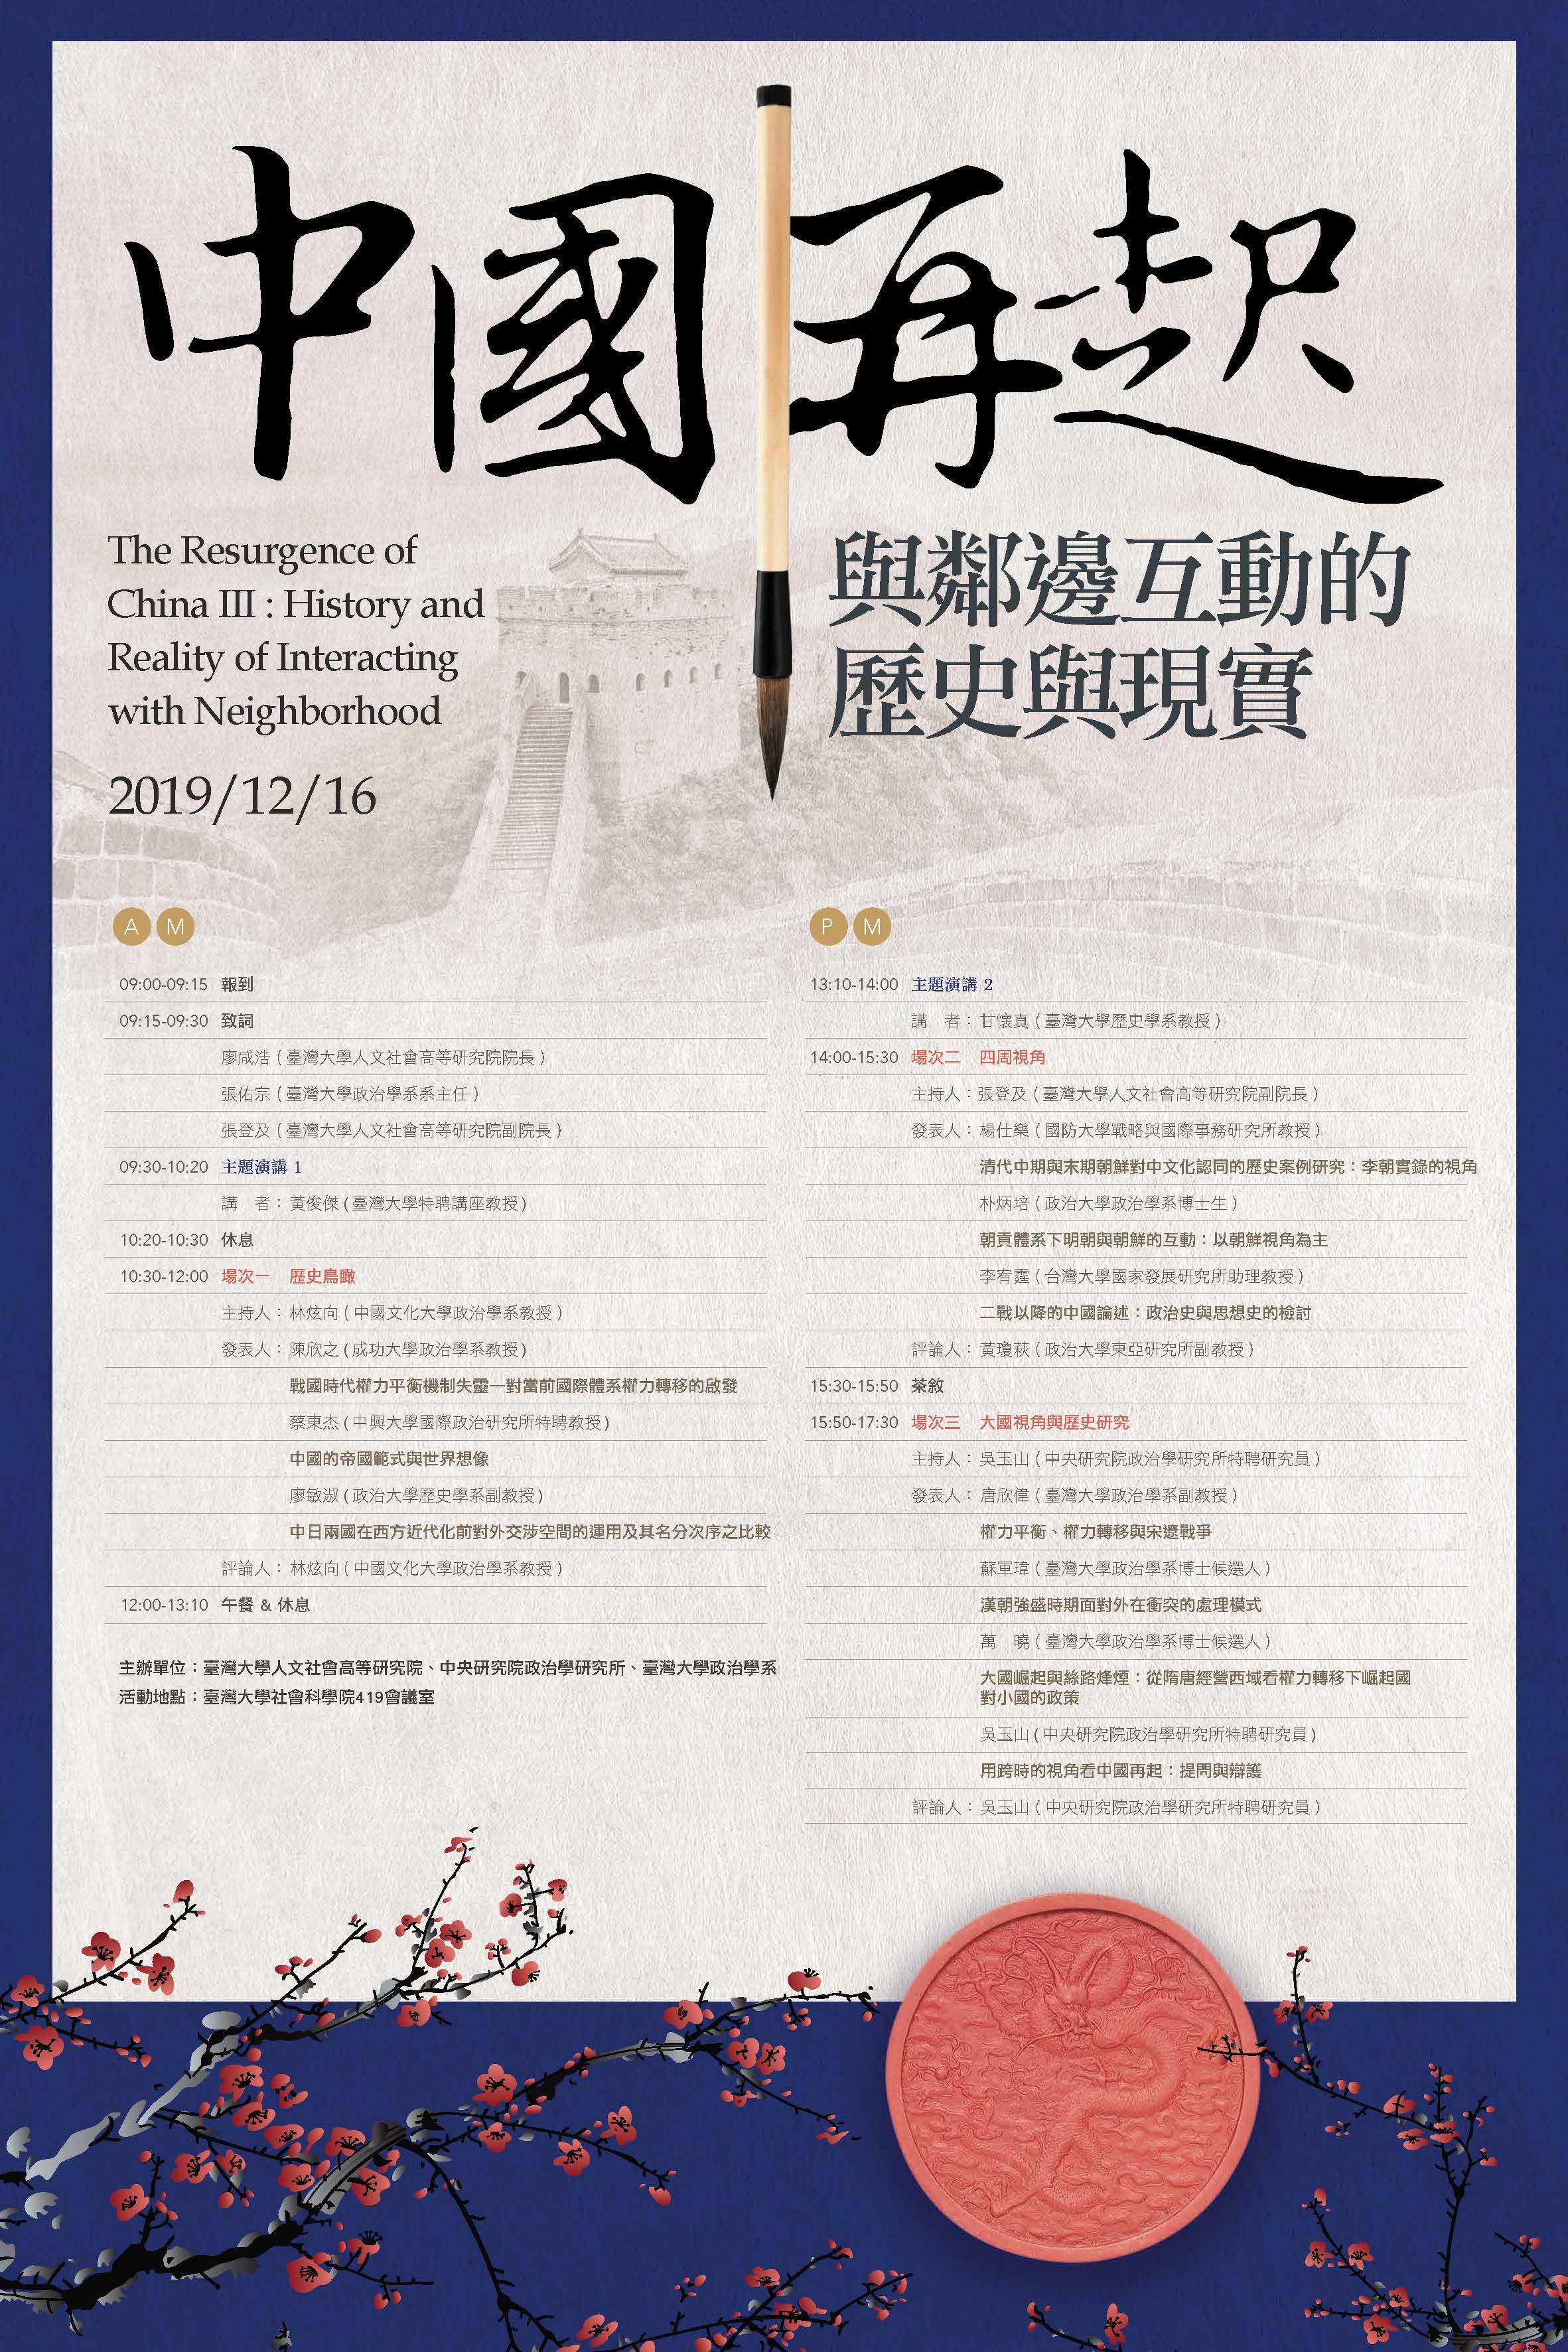 「中國再起III：與鄰邊互動的歷史與現實」學術研討會海報